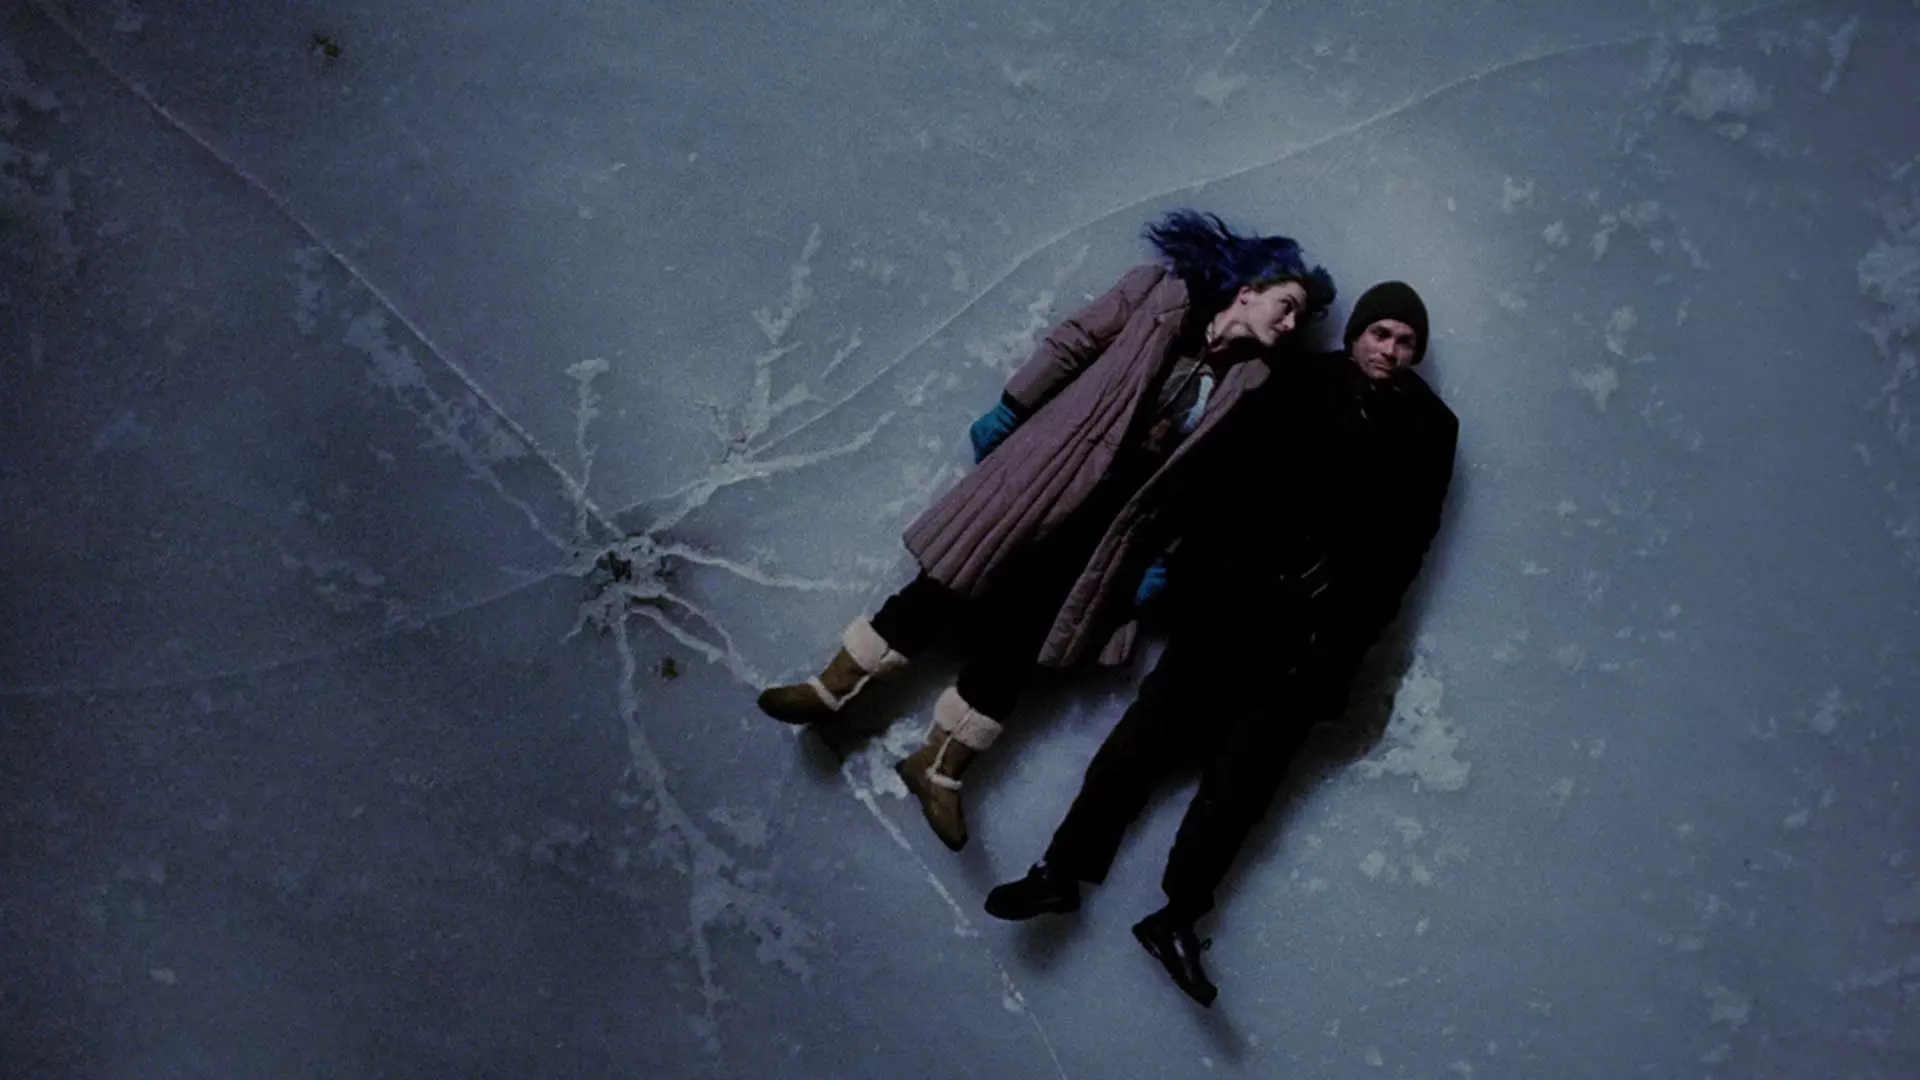 جیم کری و کیت وینسلت خوابیده روی سطح یخ زده در فیلم Eternal Sunshine of the Spotless Mind